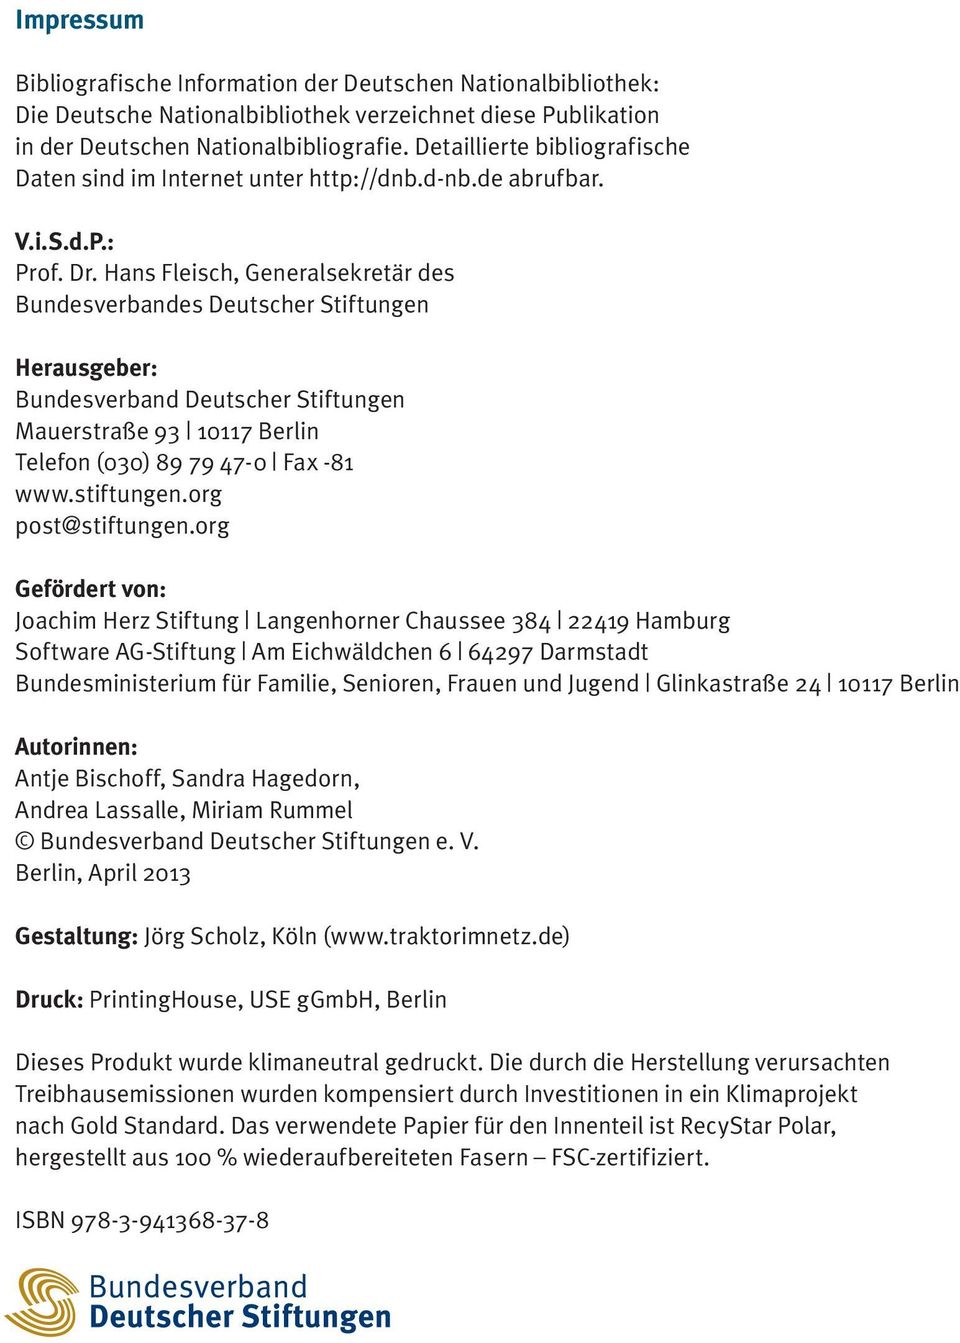 Hans Fleisch, Generalsekretär des Bundesverbandes Deutscher Stiftungen Herausgeber: Bundesverband Deutscher Stiftungen Mauerstraße 93 10117 Berlin Telefon (030) 89 79 47-0 Fax -81 www.stiftungen.